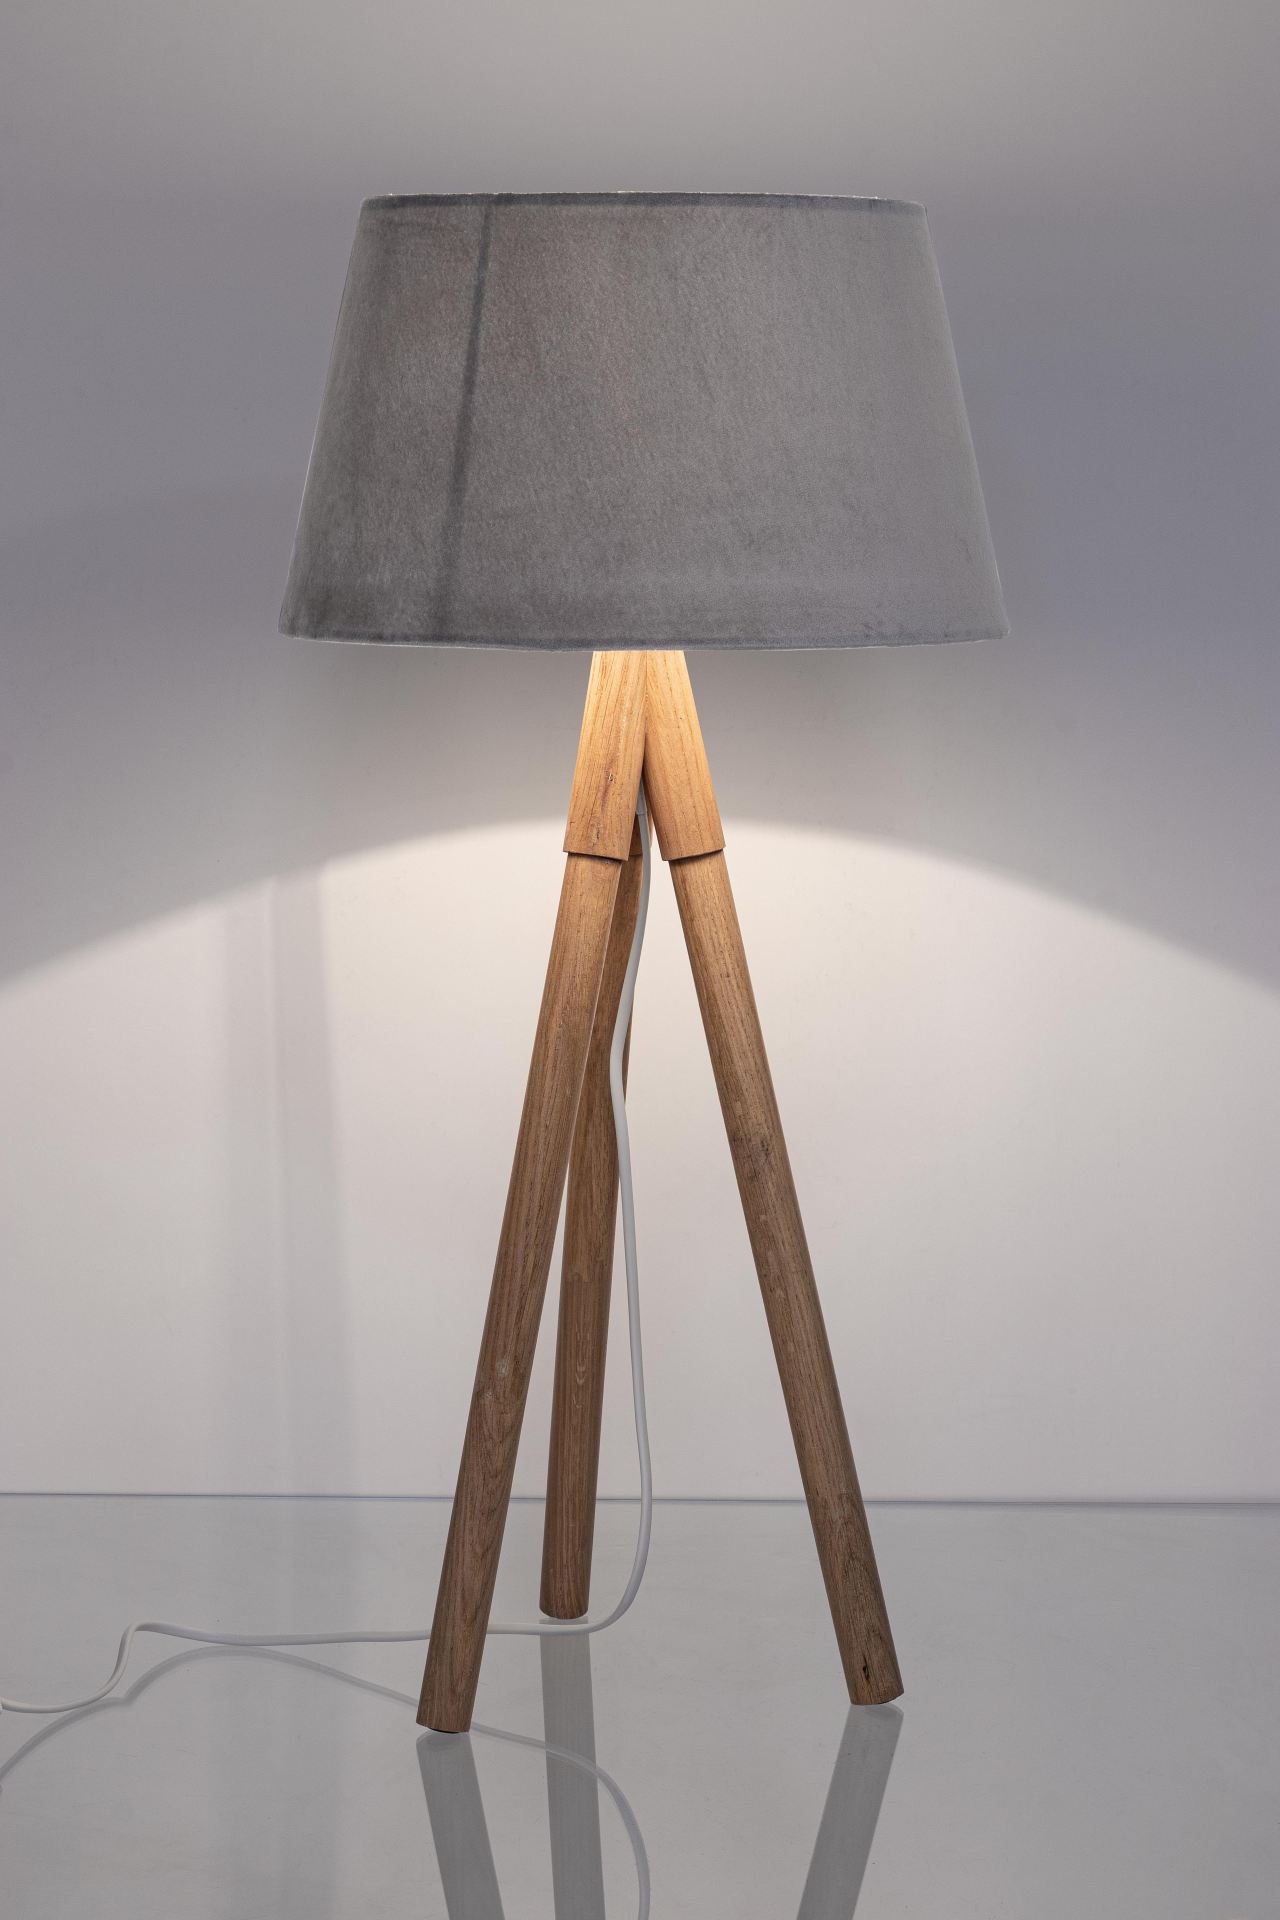 Die Tischleuchte Wallas überzeugt mit ihrem klassischen Design. Gefertigt wurde sie aus Tannenholz, welches einen natürlichen Farbton besitzt. Der Lampenschirm ist aus Samt und hat eine graue Farbe. Die Lampe besitzt eine Höhe von 69 cm.